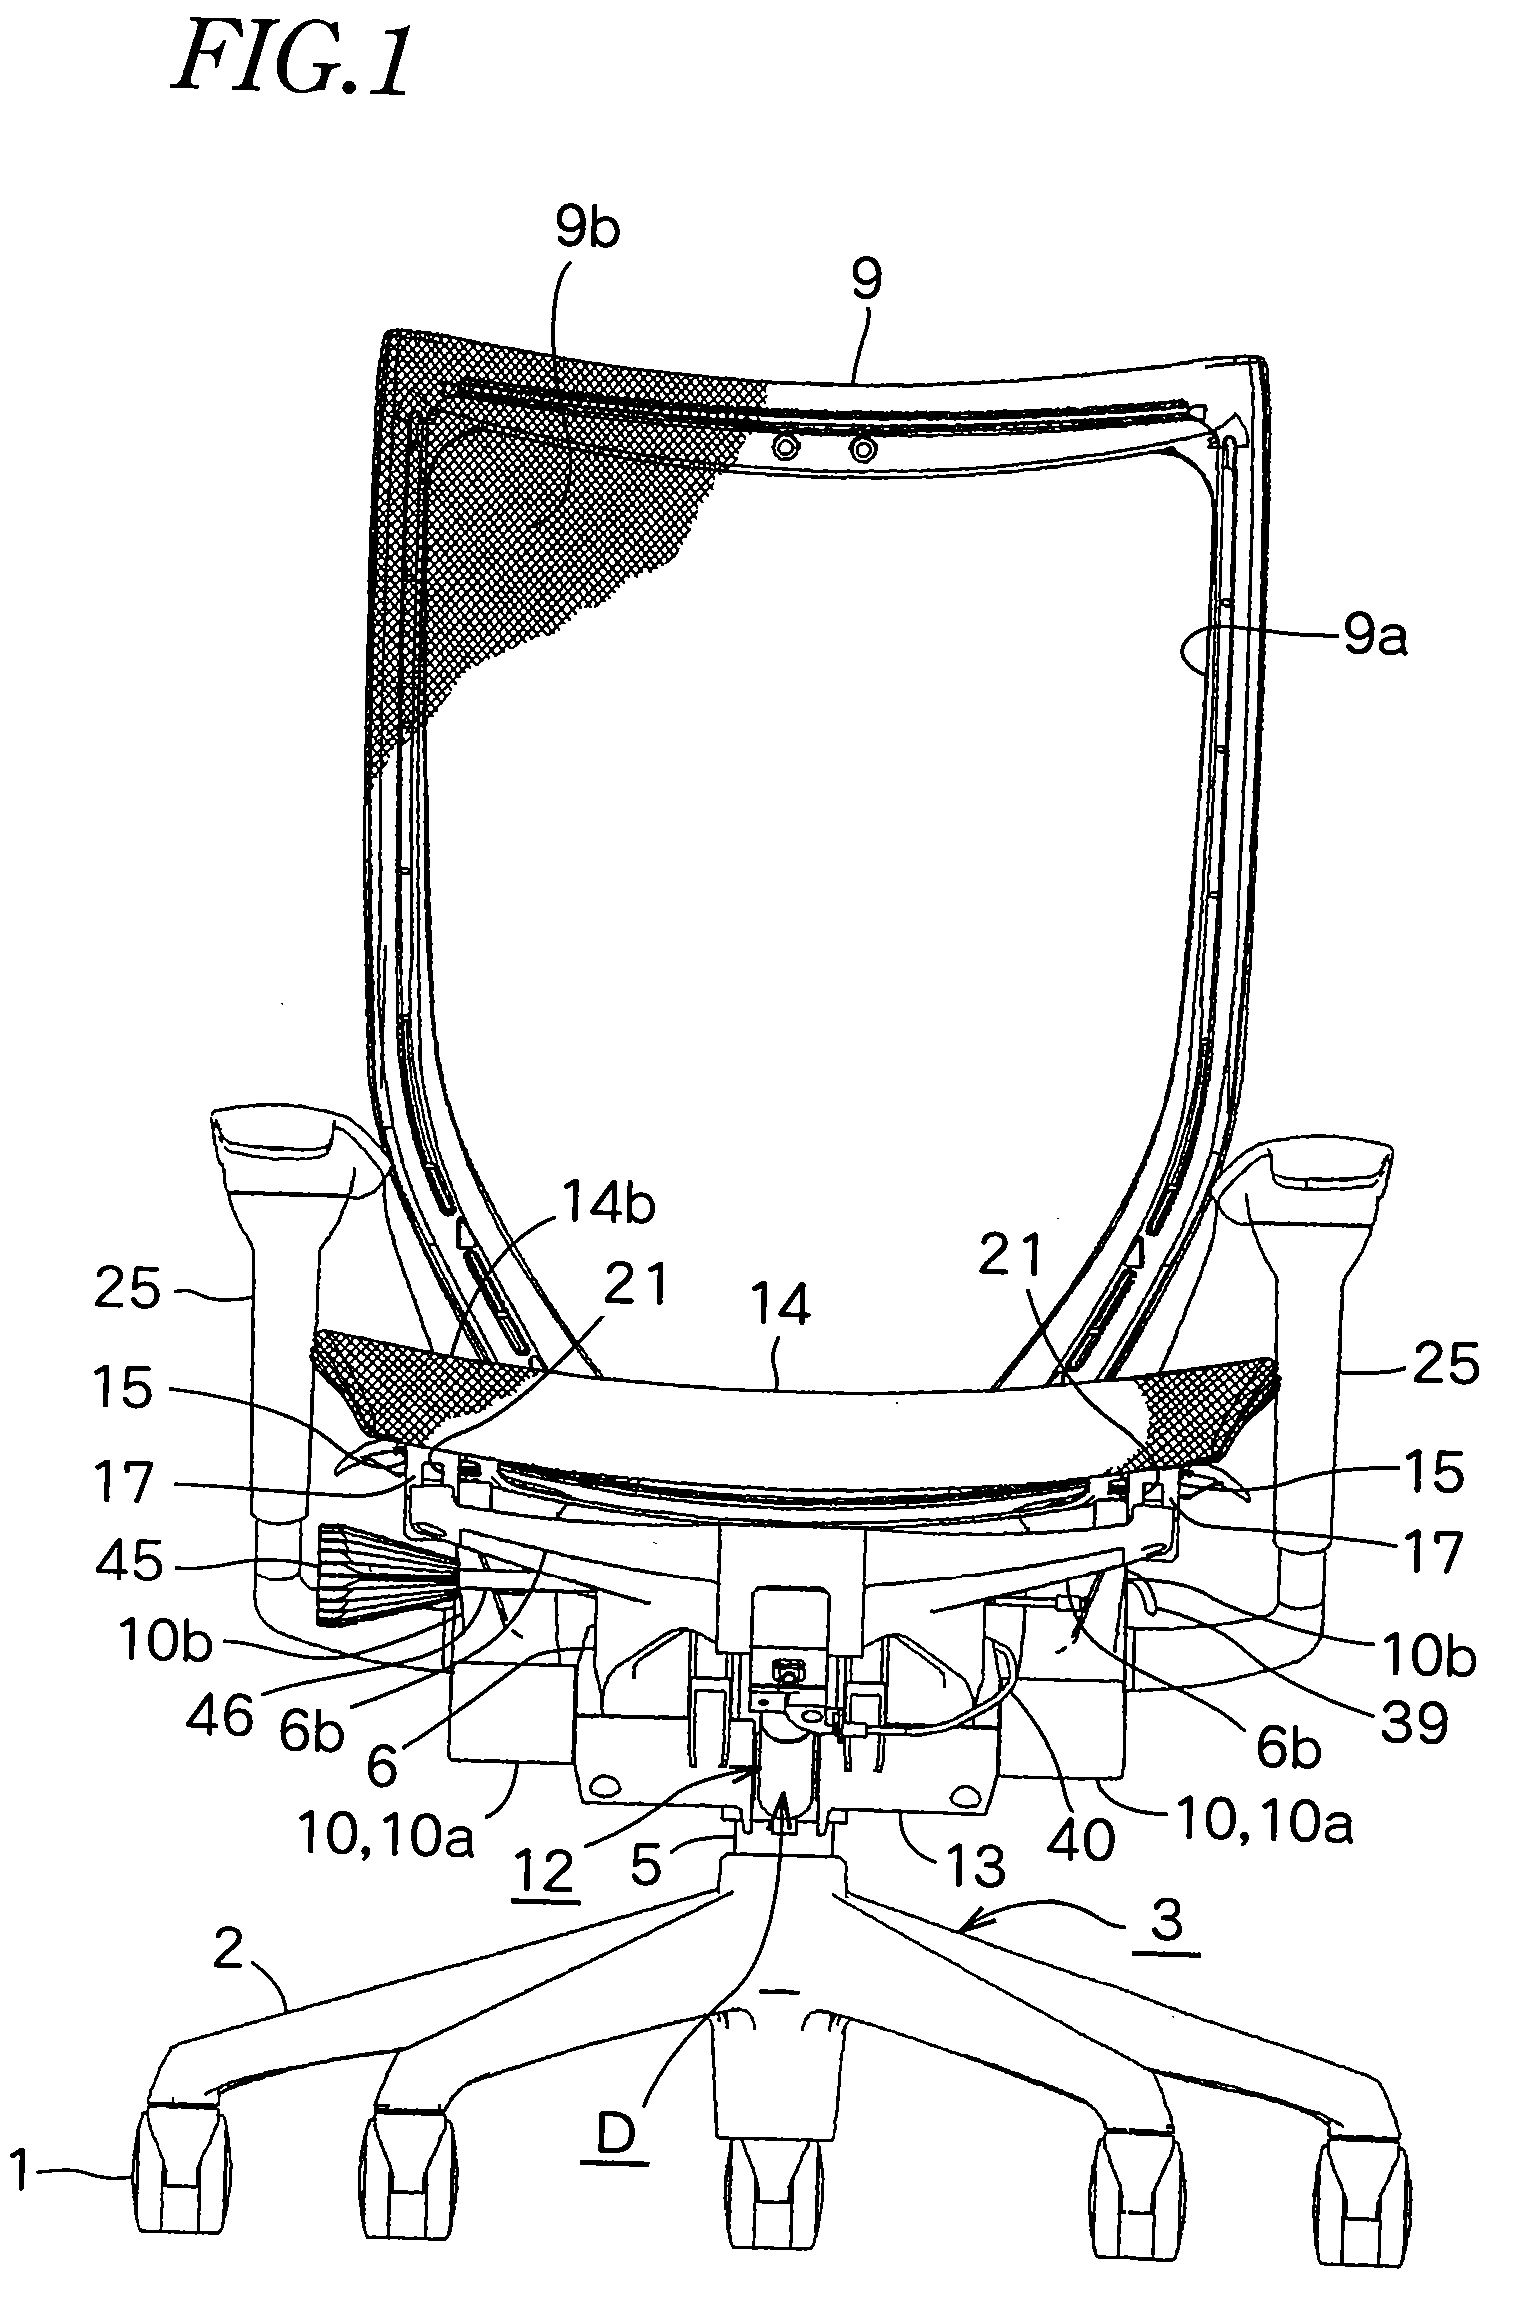 Backrest-tilting device